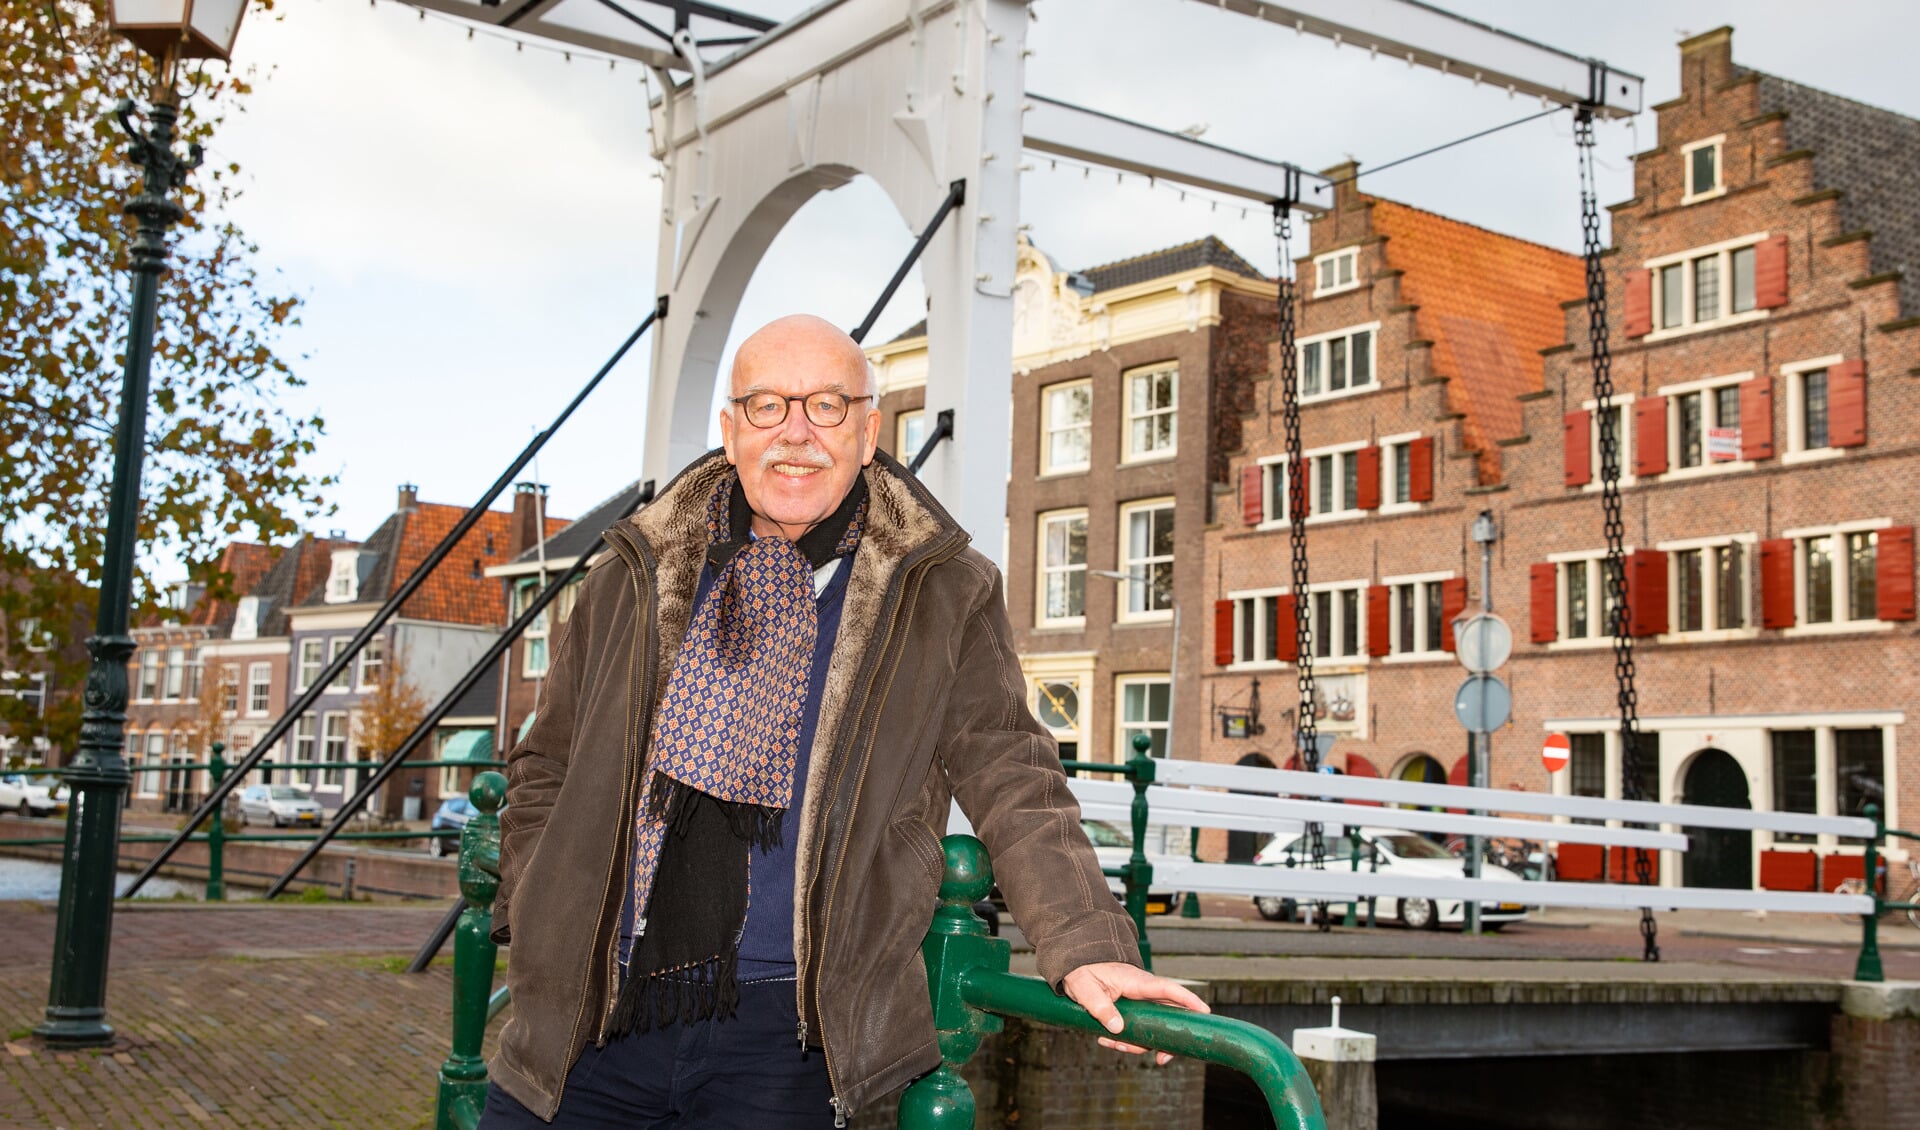 Egbert voor de Pakhuisbrug met op de achtergrond het pand van Vereniging Oud Hoorn aan Onder de Boompjes. "Ik hoop dat de lezers Hoorn net zo leuk vinden als ik." (Foto: Vincent de Vries/RM)